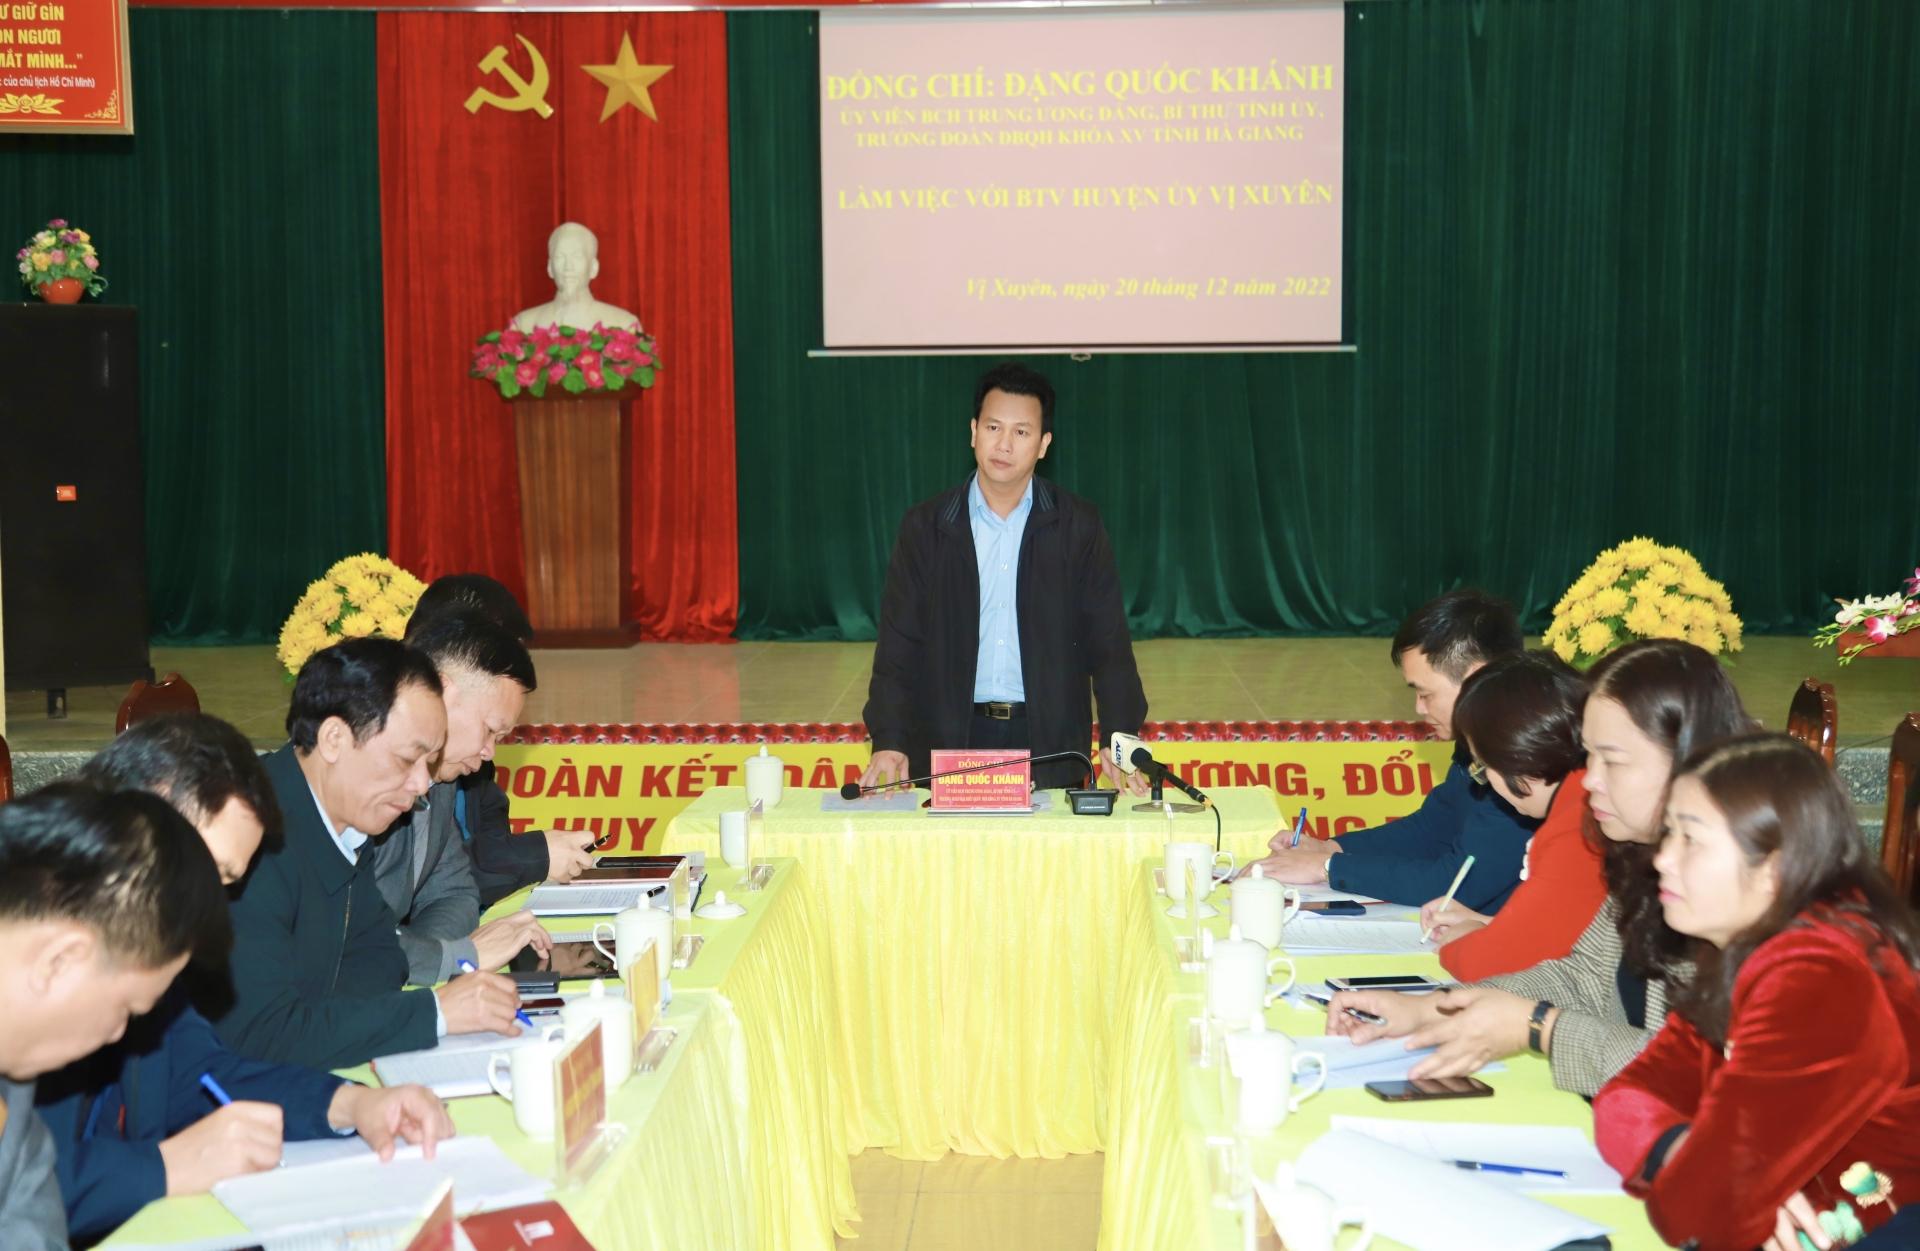 Bí thư Tỉnh ủy Đặng Quốc Khánh phát biểu kết luận buổi làm việc